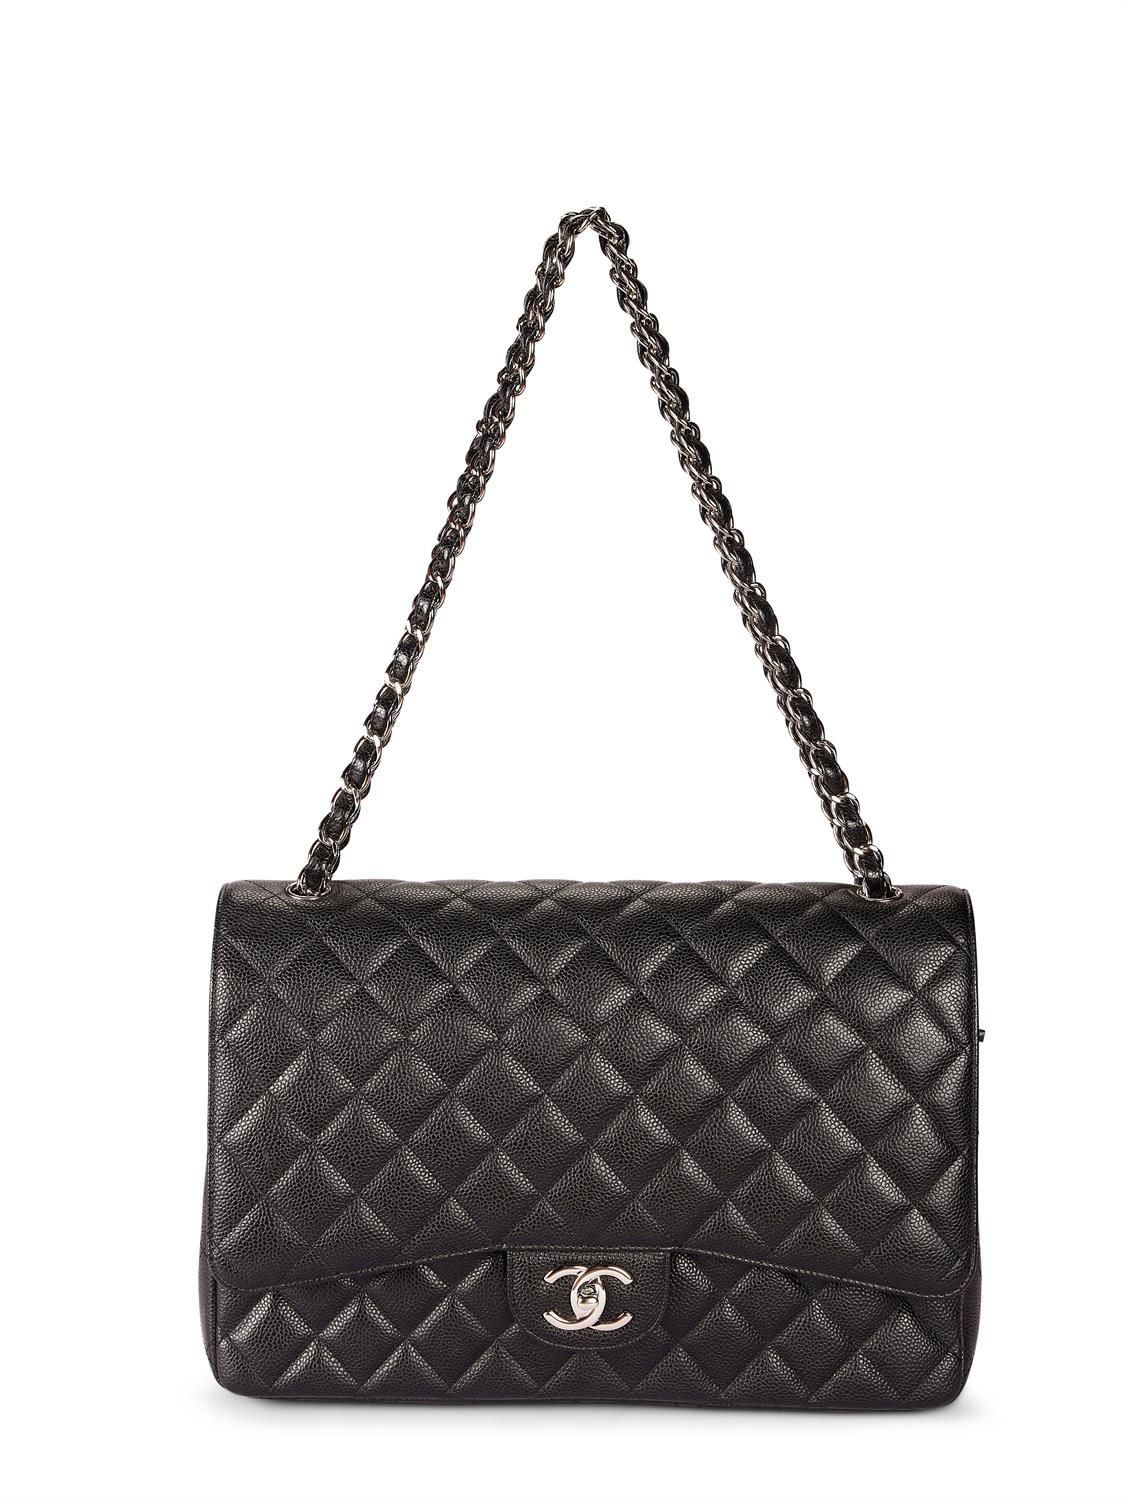 Chanel, Maxi Classic, a black lambskin flap bag, no. 159…